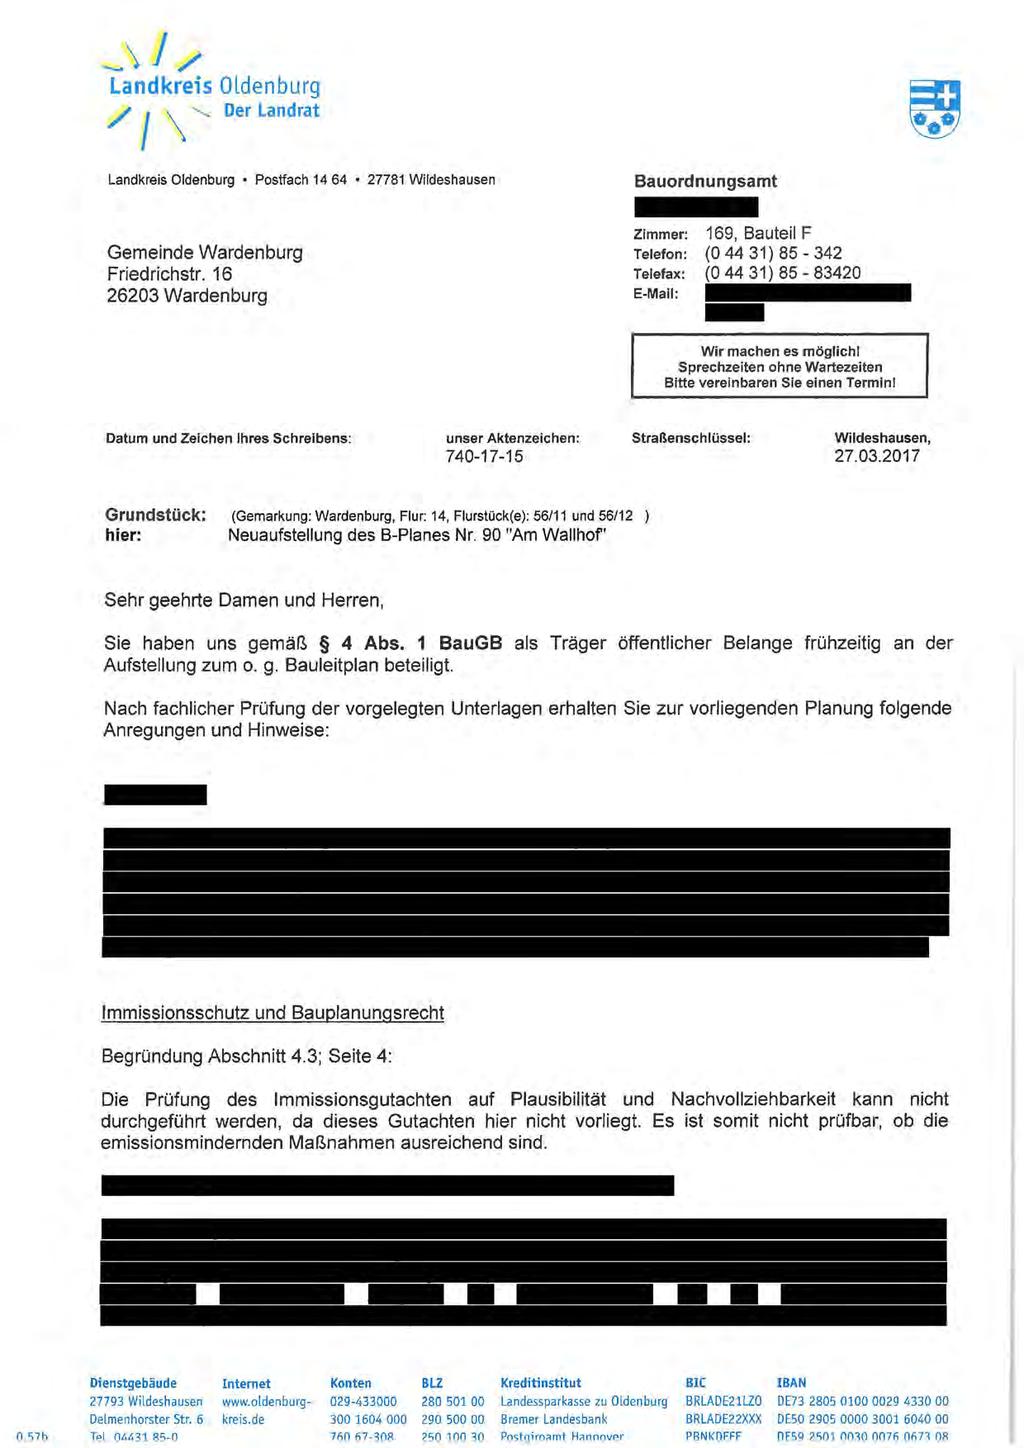 J / / \ "-... Der Landrat Postfach 14 64 27781 Wildeshausen Bauordnungsamt Gemeinde Wardenburg Friedrichstr.